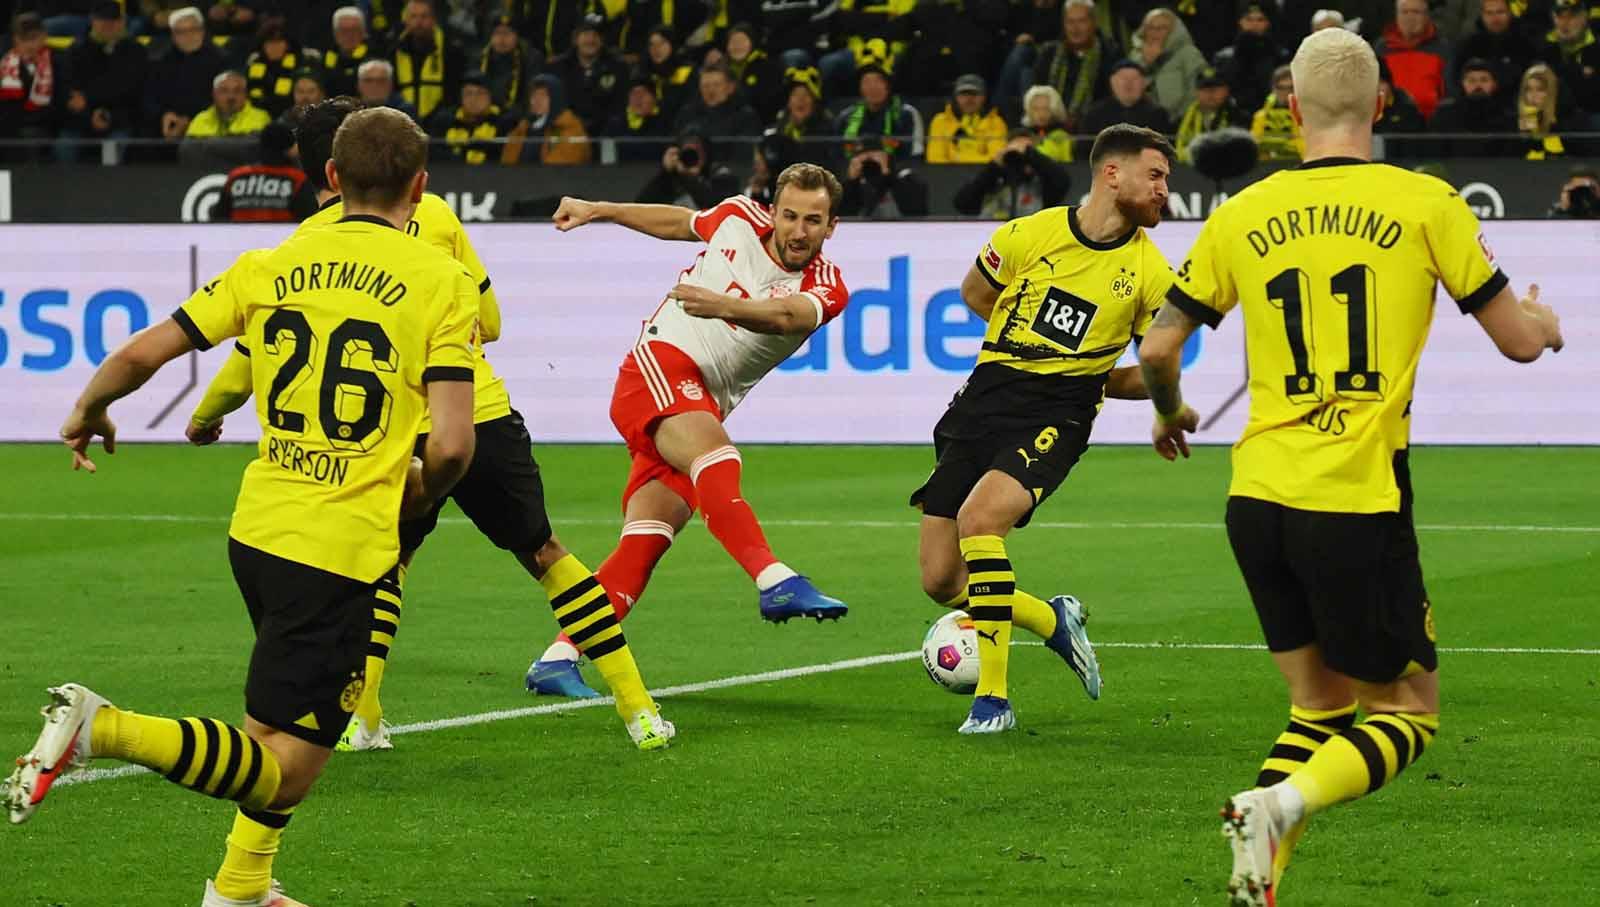 Harry Kane melepaskan tendangan keras ke gawang Borussia Dortmund pada laga Bundesliga Jerman di Stadion Signal Iduna Park. (Foto: REUTERS/Wolfgang Rattay)